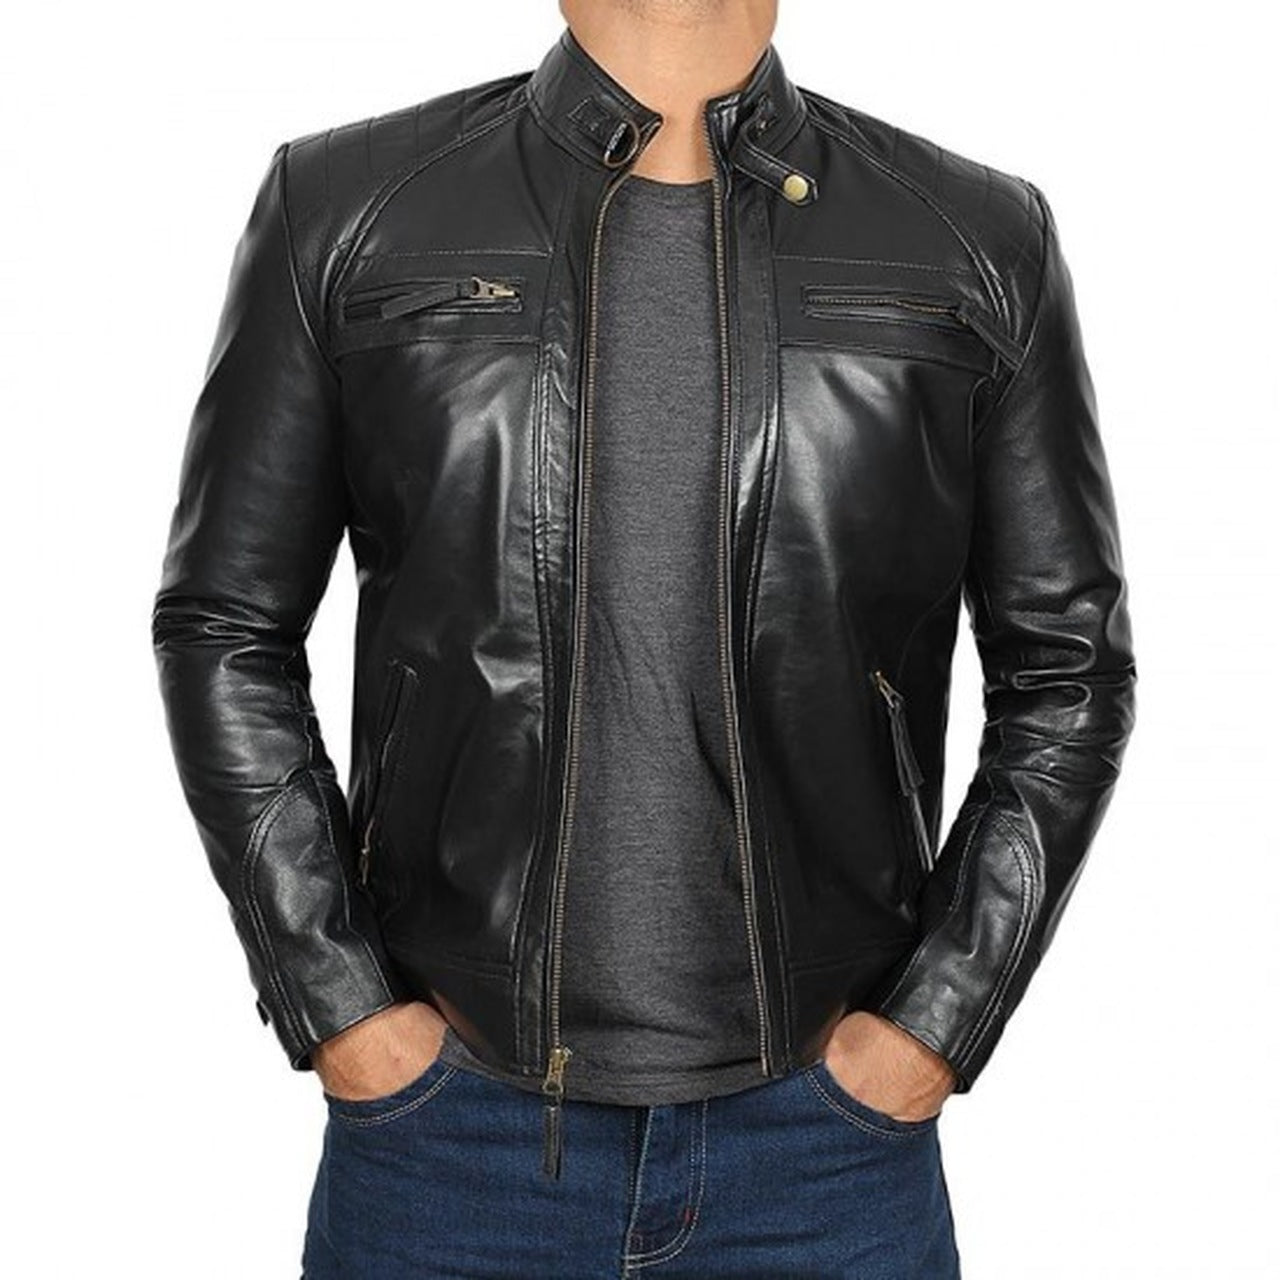 Black Stylish Genuine Leather Jacket for Men - Leather Jacket